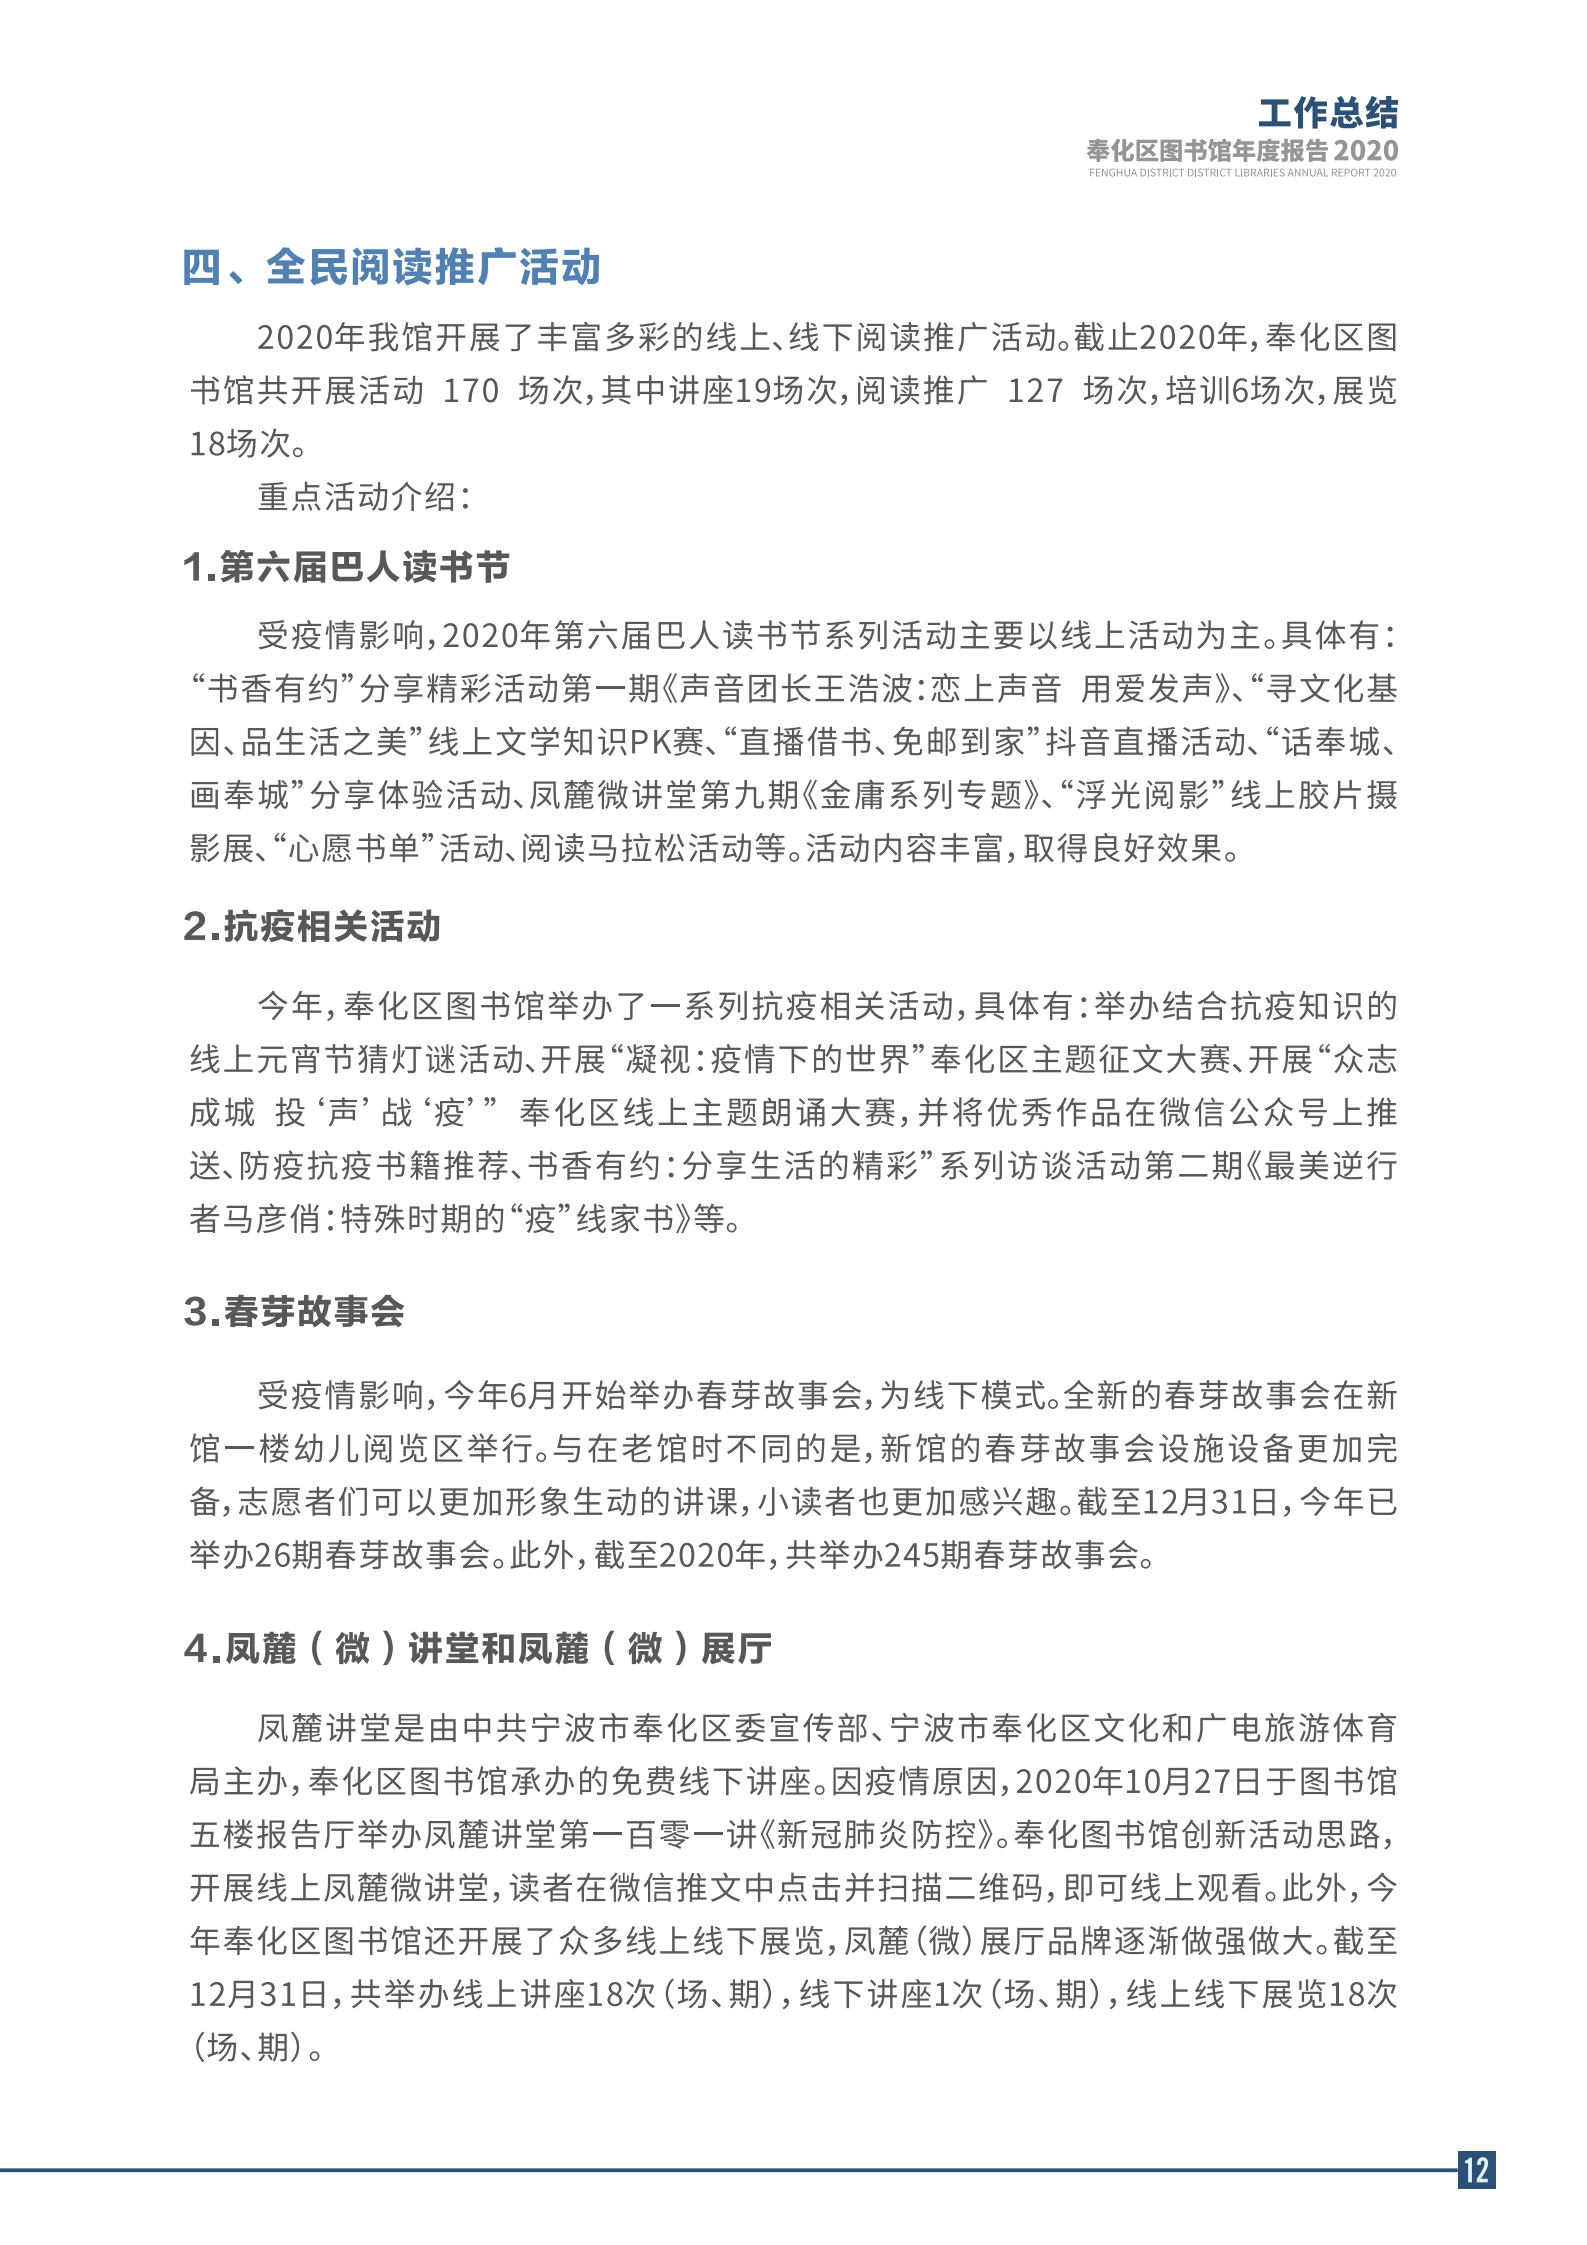 宁波市奉化区图书馆2020年年度报告 终稿_12.png